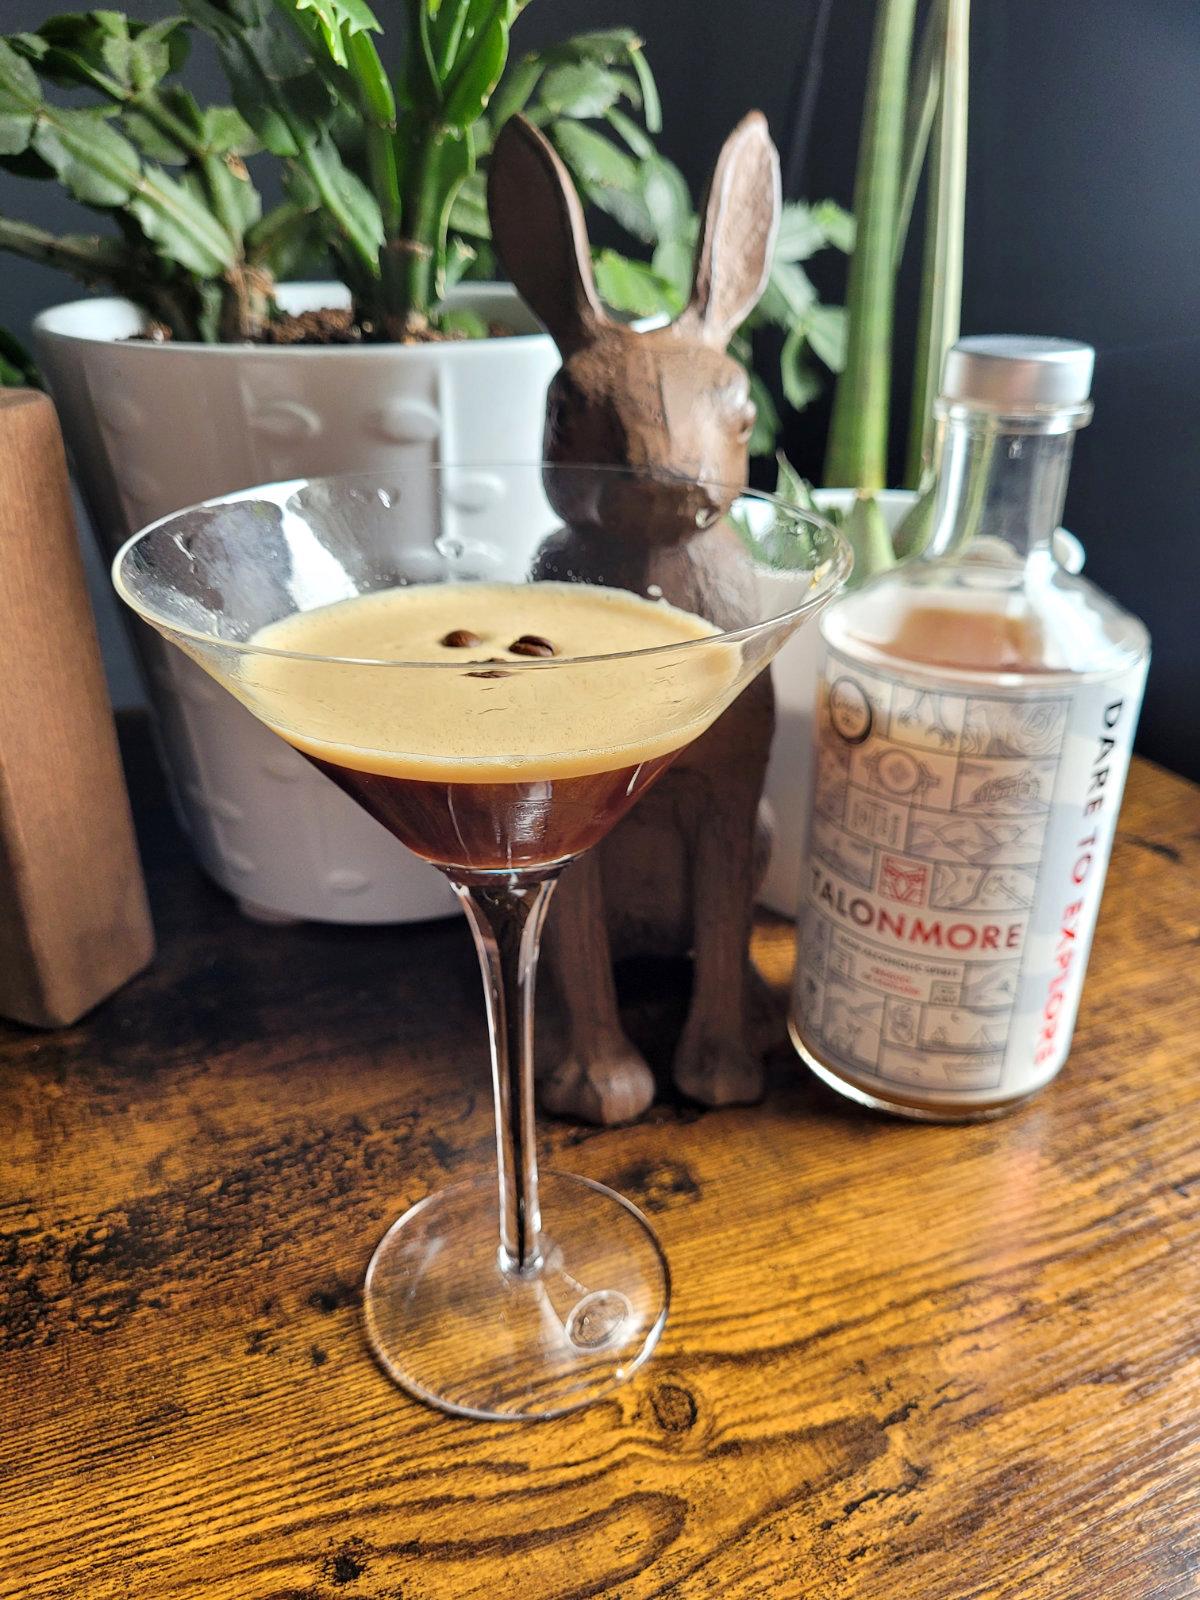 talonmore alcohol free espresso moretini recipe espresso martini